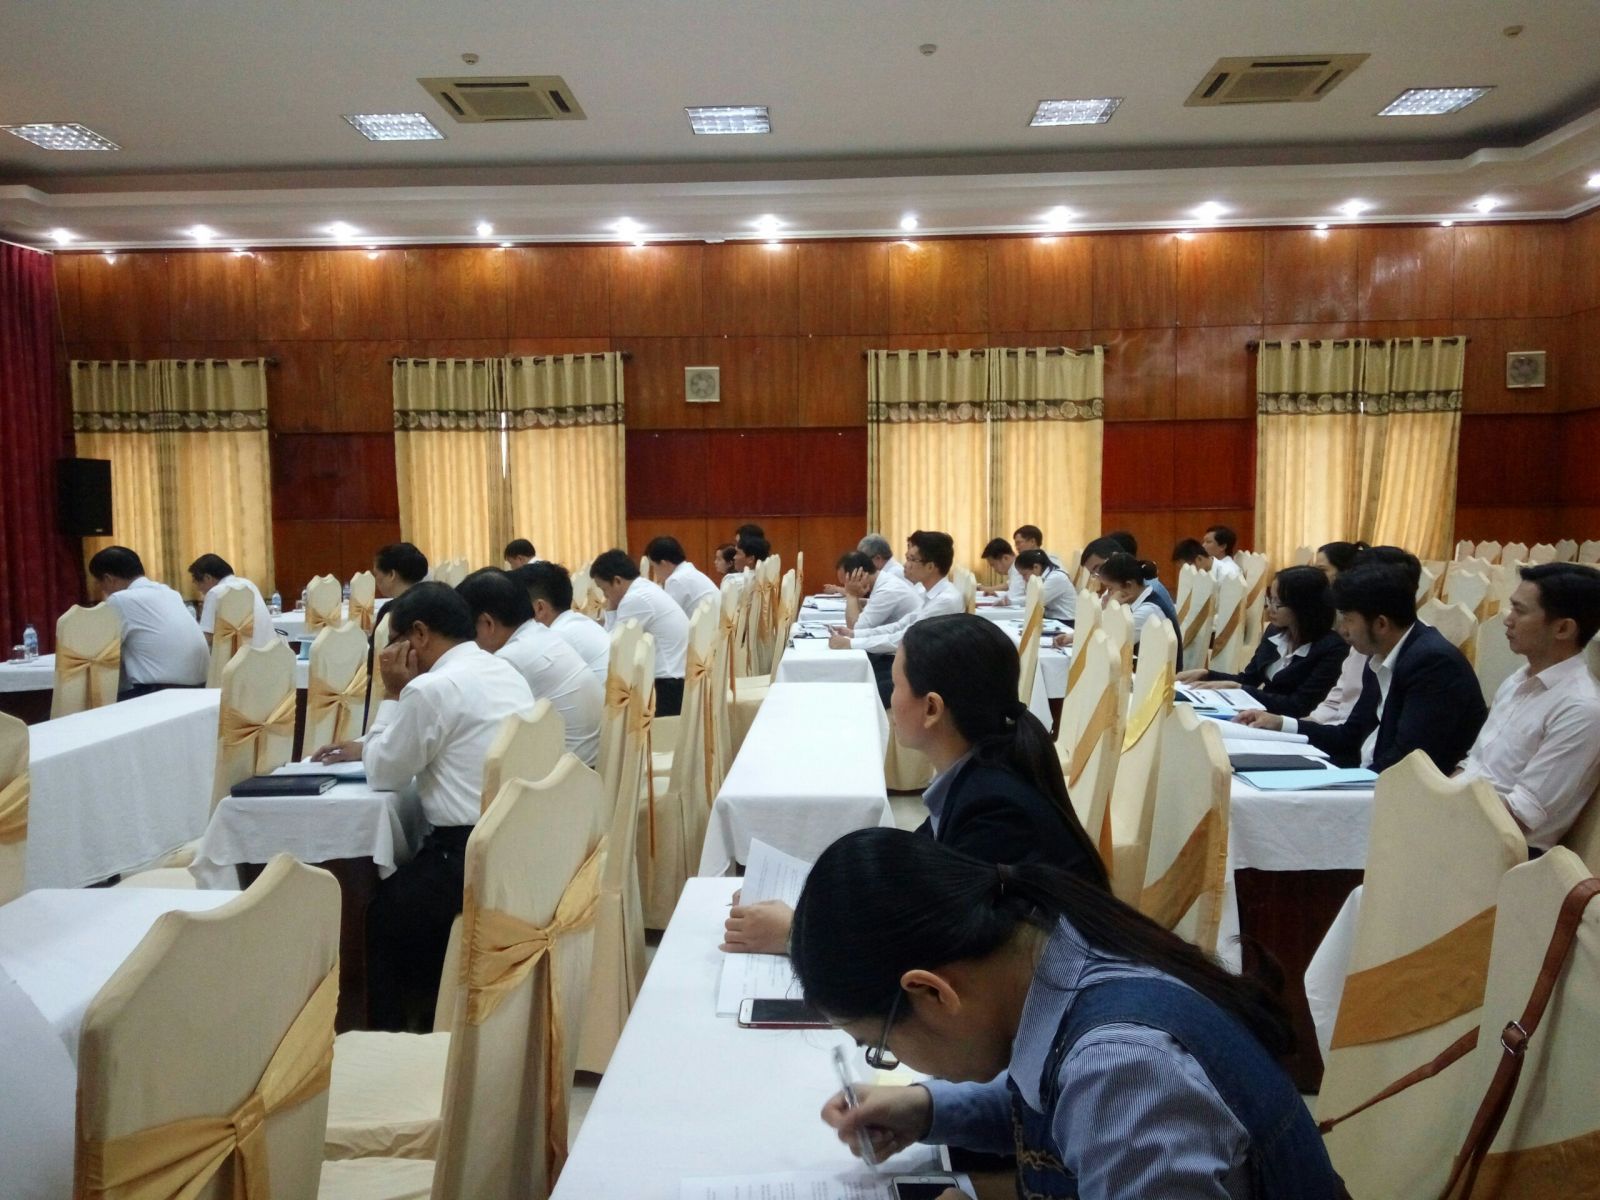 Hội nghị hỗ trợ pháp lý tỉnh Quảng Ngãi tổ chức tại Khách sạn Hùng Vương - Quảng Ngãi